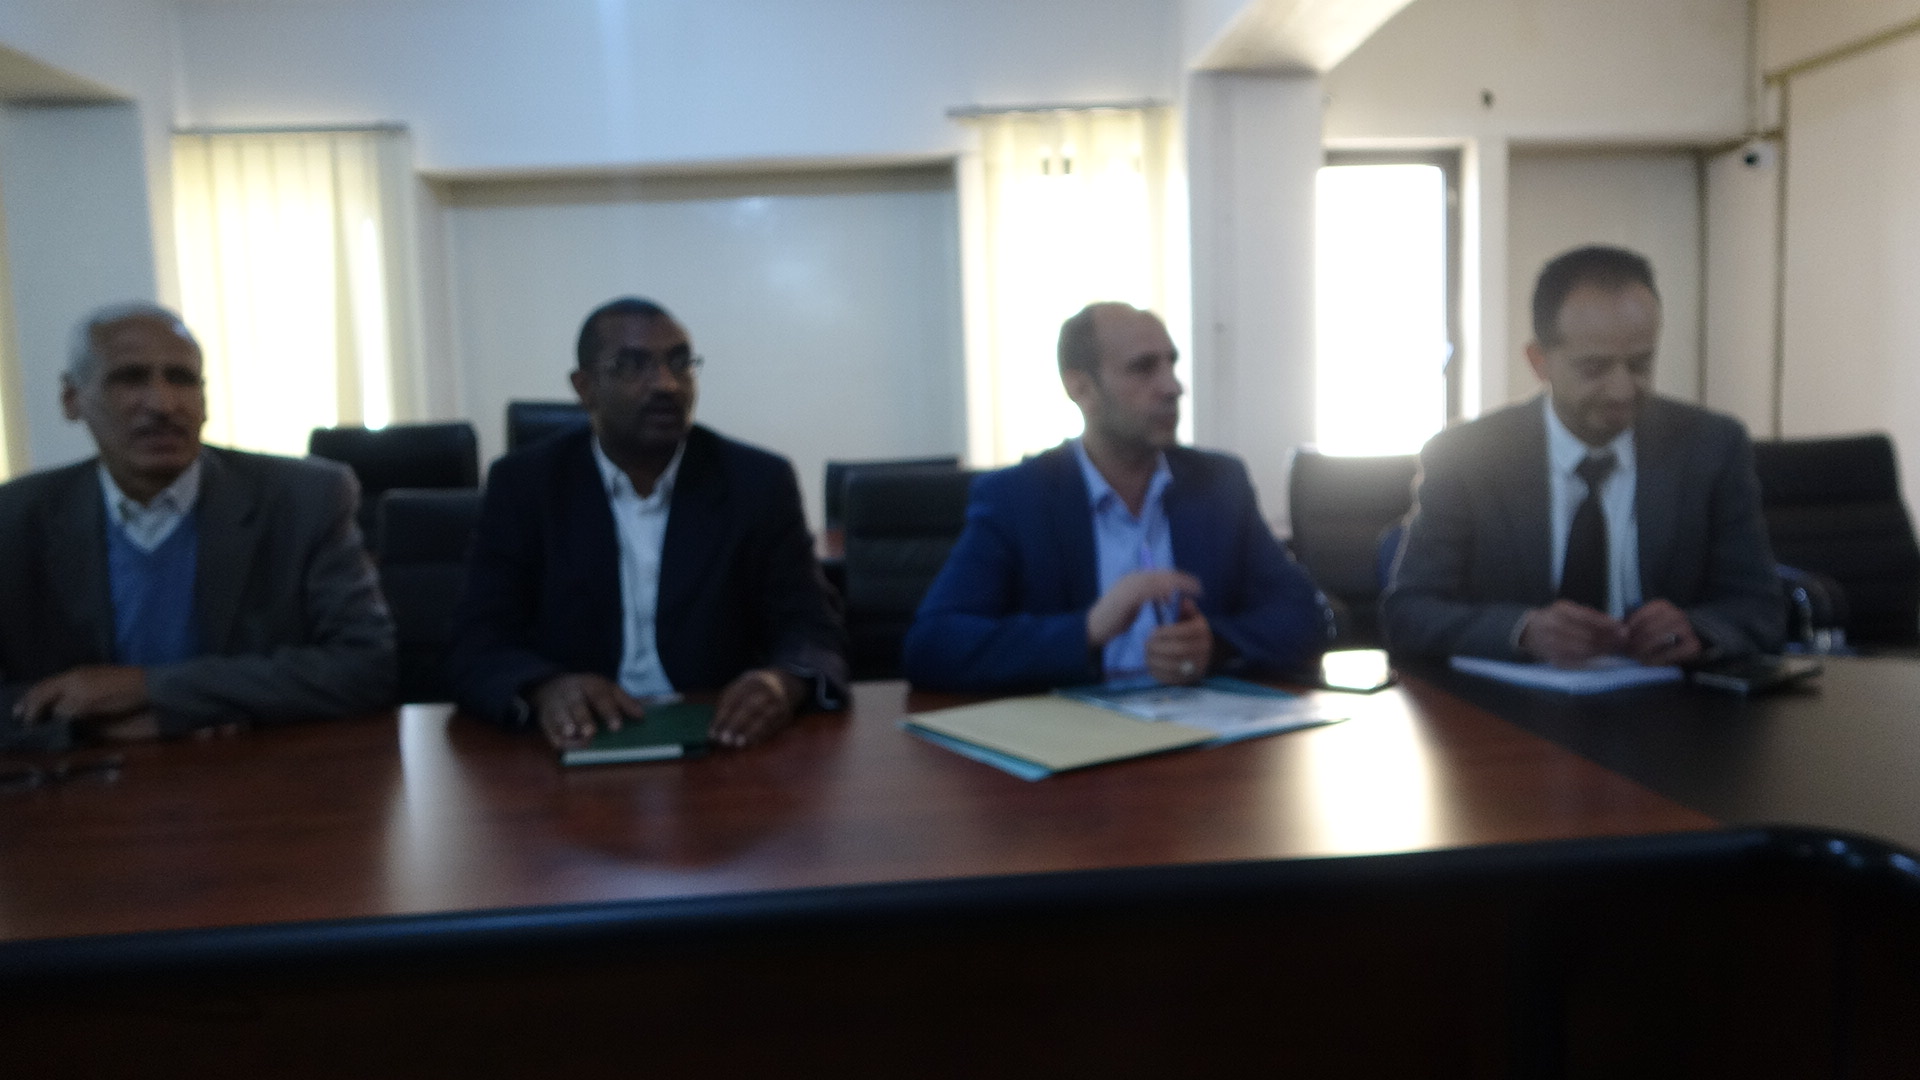 مجلس الاعتماد الأكاديمي يعقد لقاء تشاوري مع قيادة مجلس الأمناء لجامعة اليمنية الأردنية